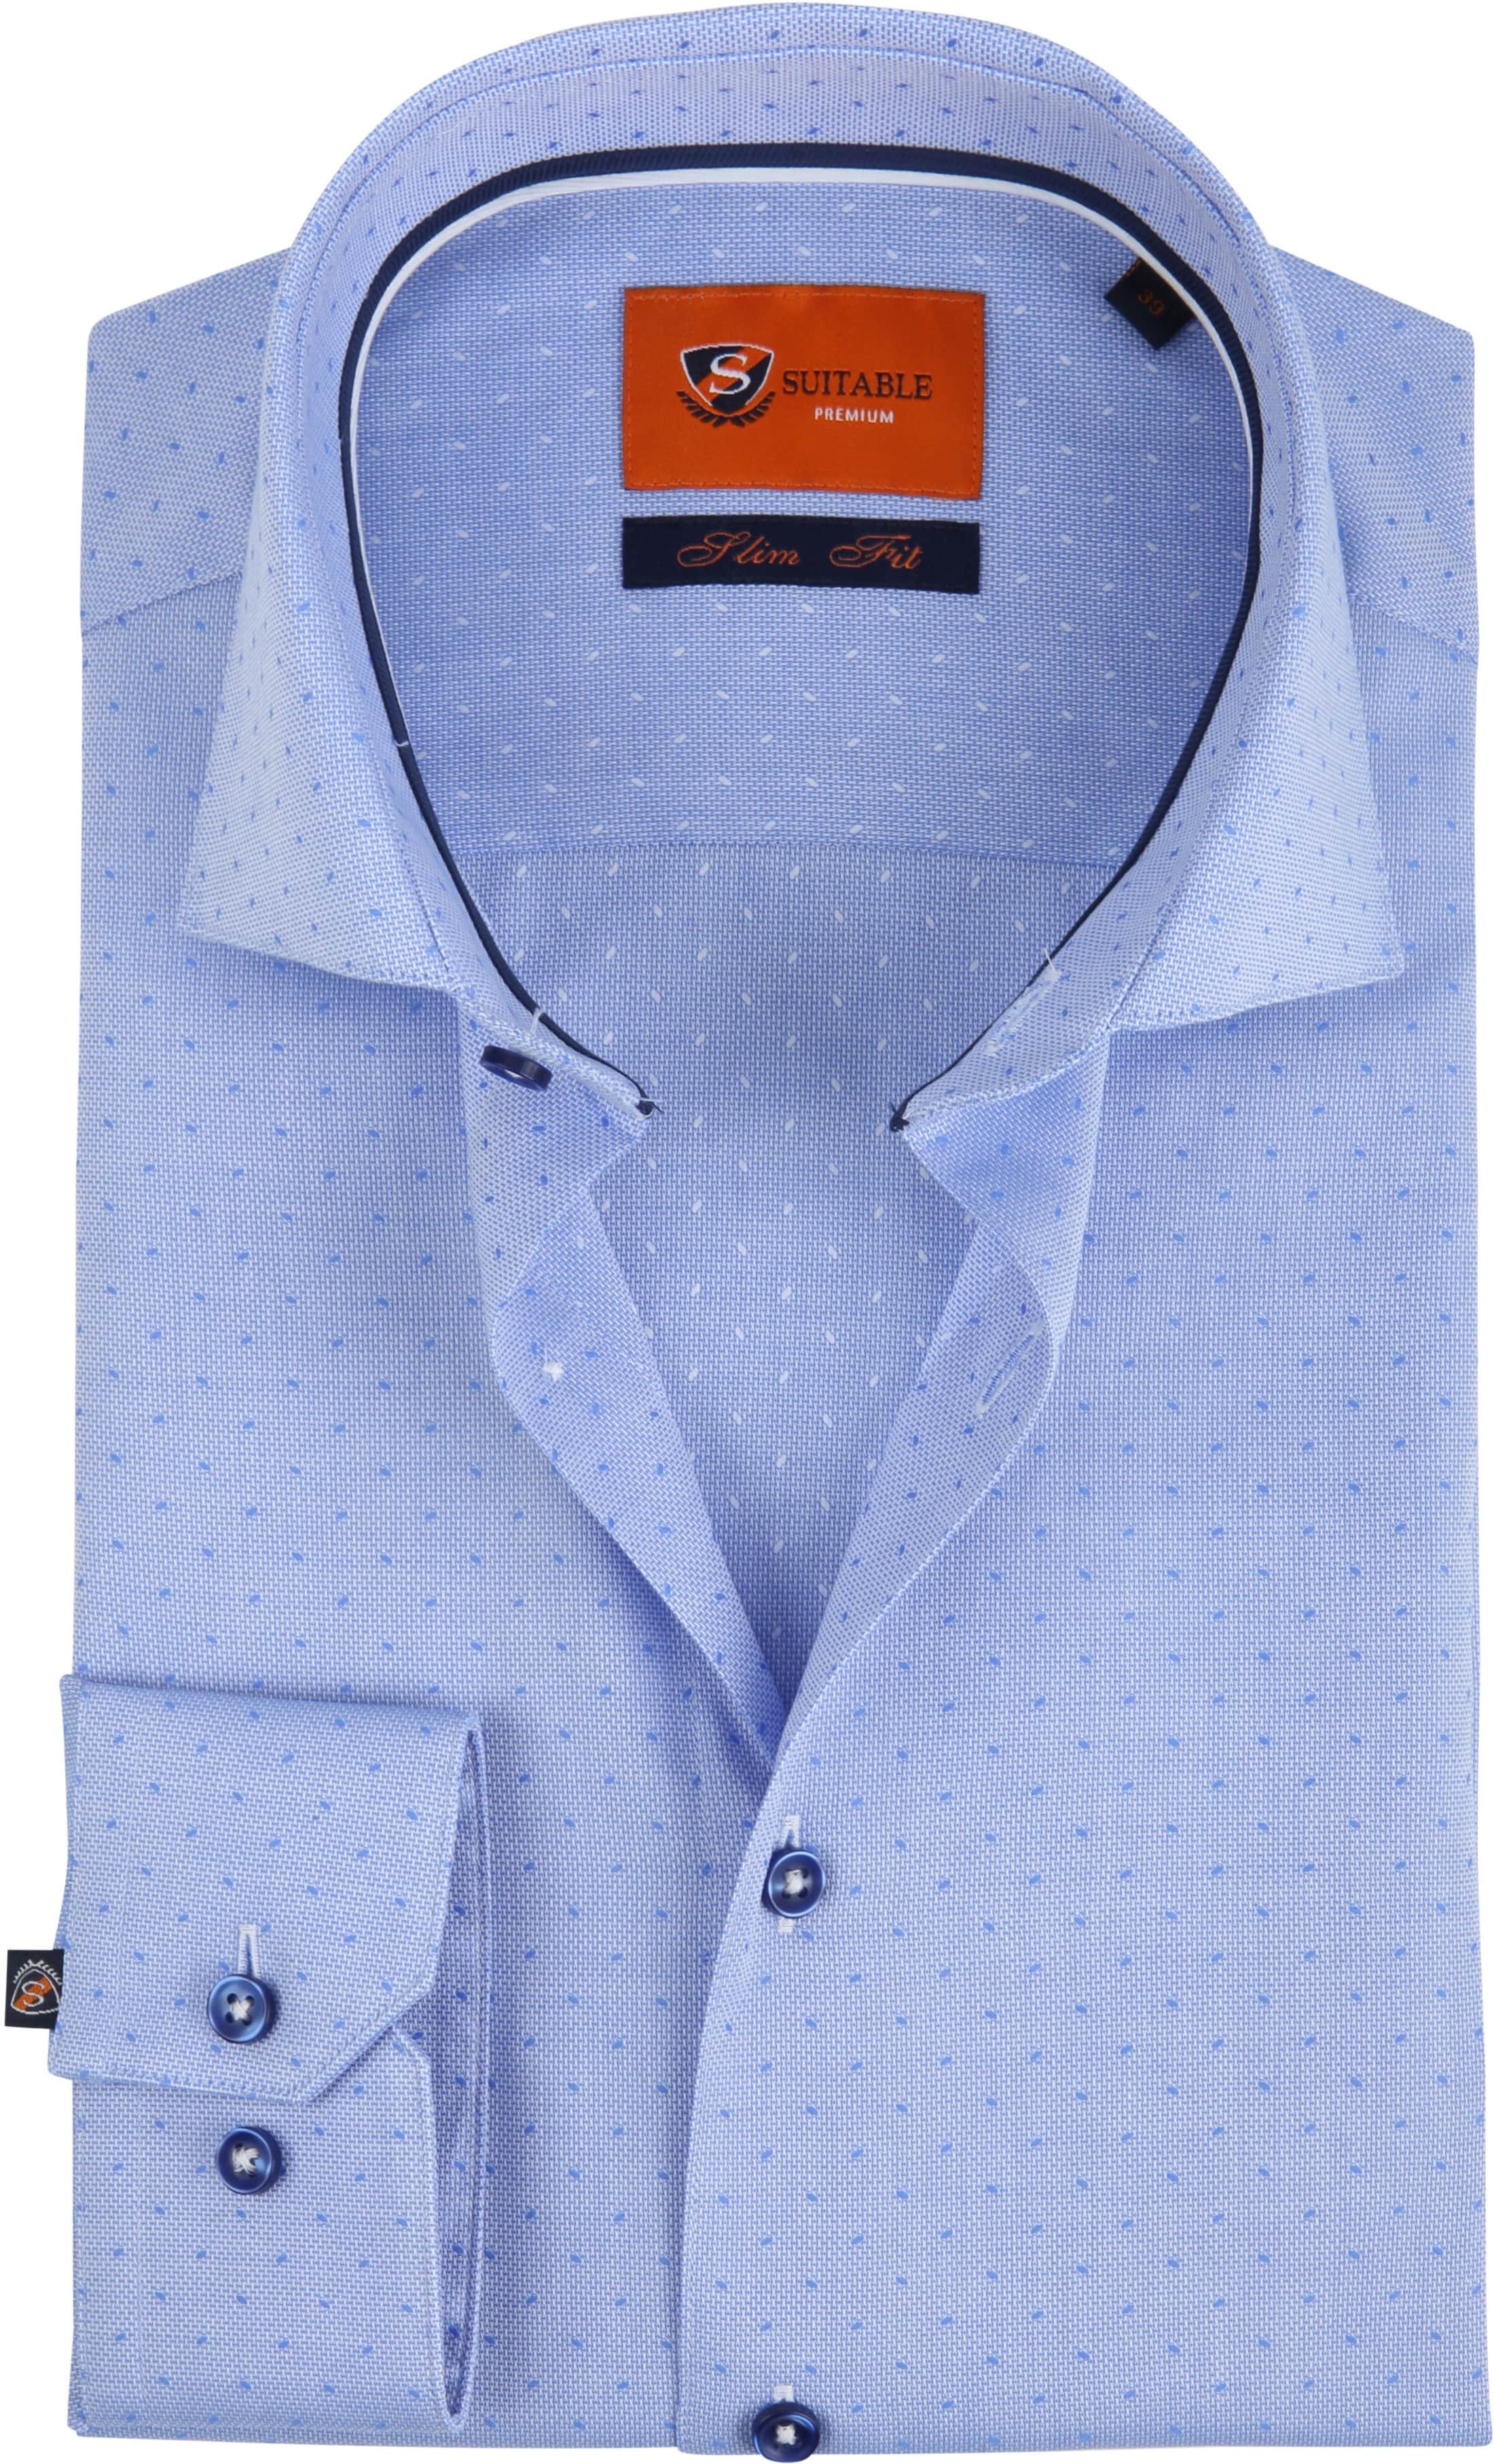 Suitable Shirt Oxford Dots Blue size 15 3/4